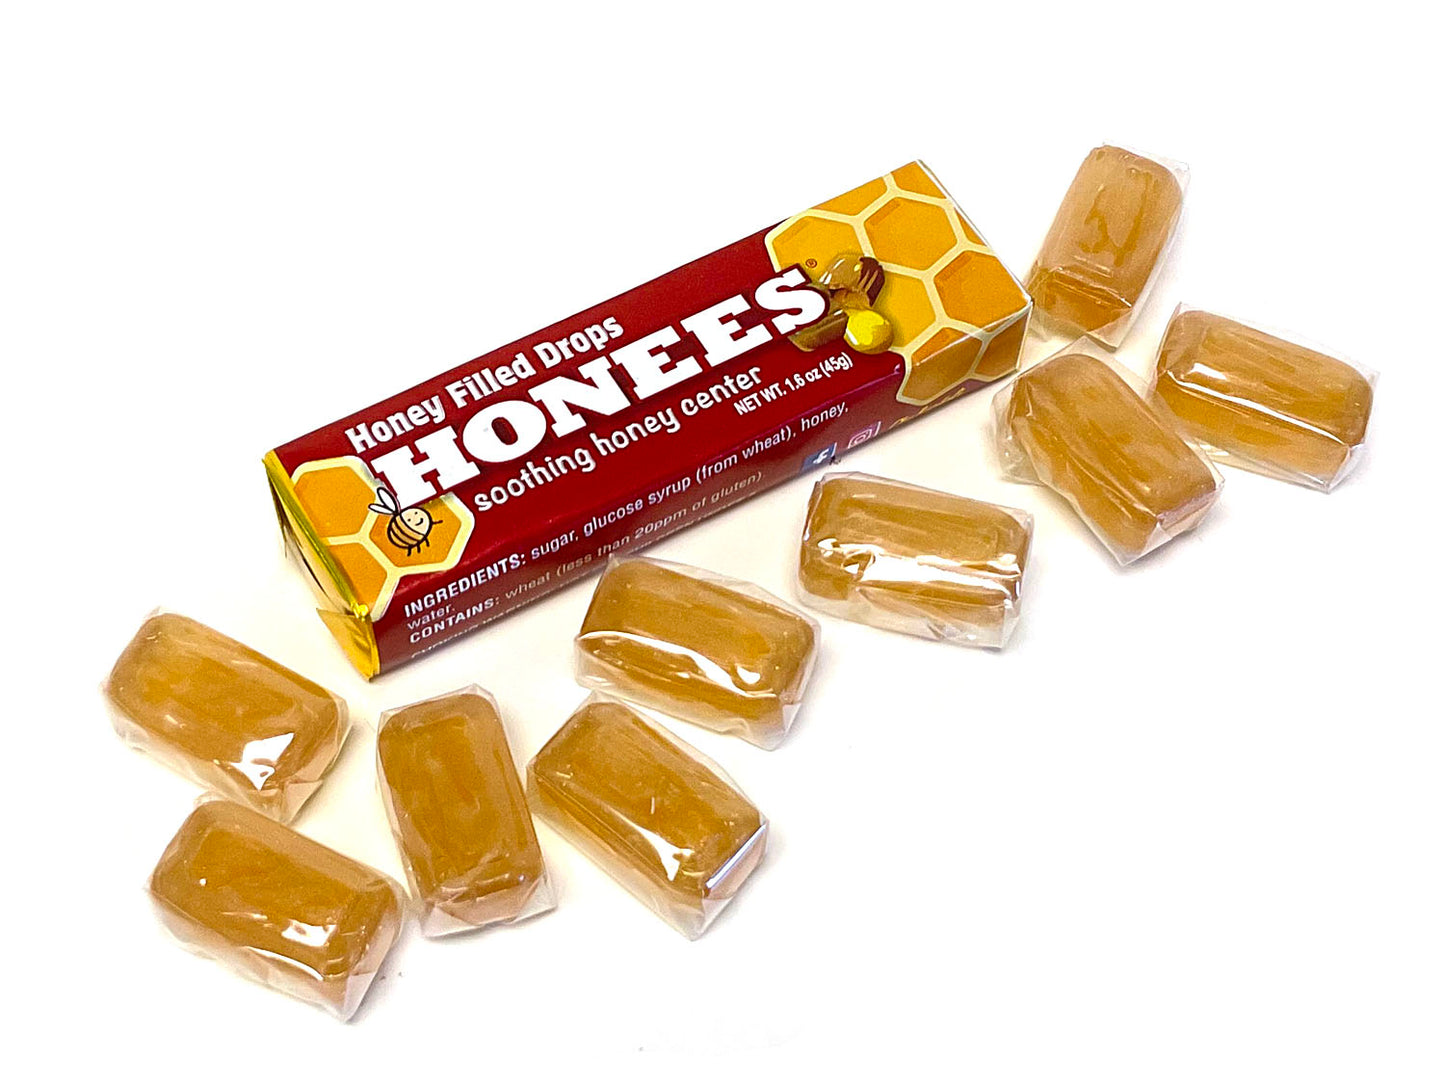 Honees Original Drops - 1.6 oz pkg with extras